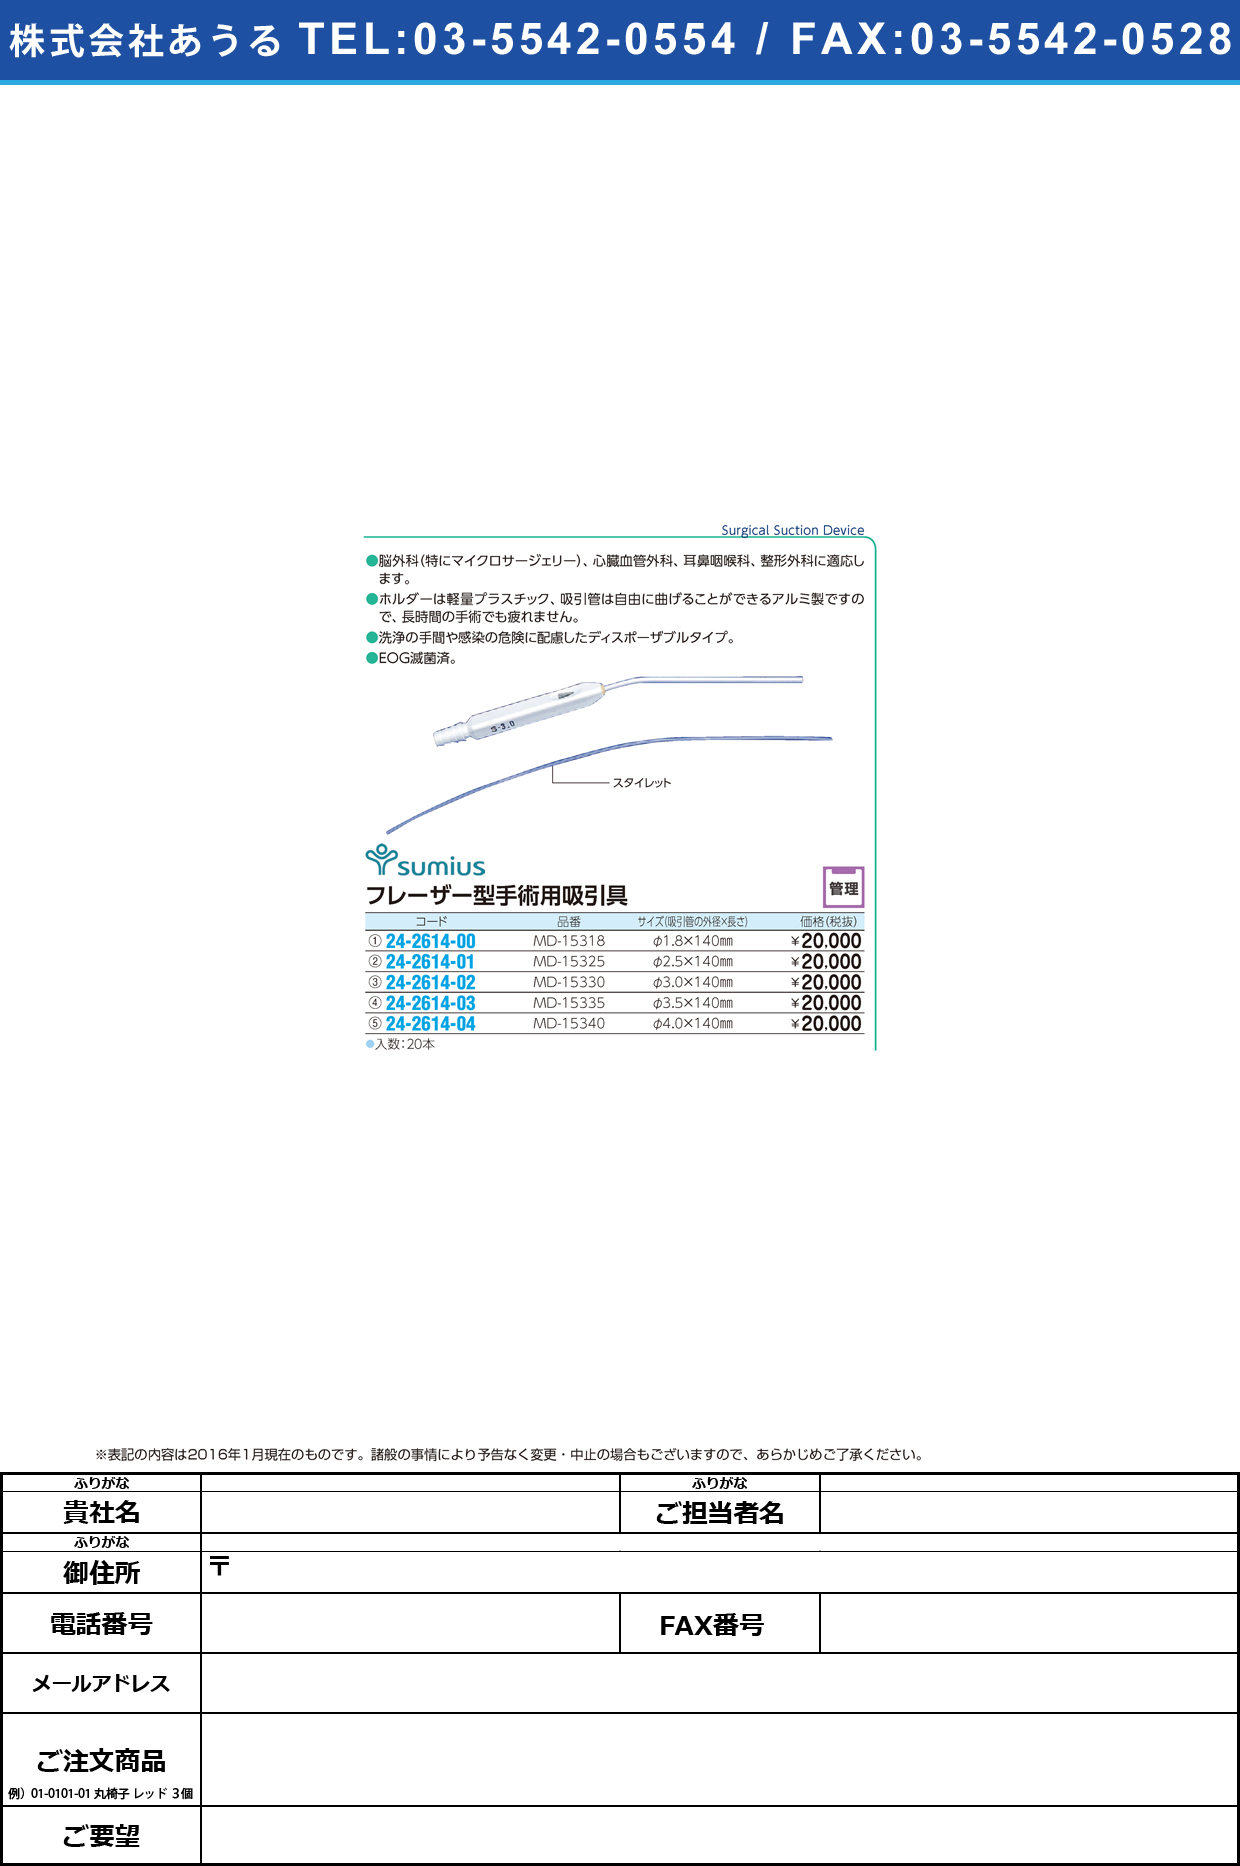 フレーザー型手術用吸引具 ﾌﾚｰｻﾞｰｶﾞﾀｼｭｼﾞｭﾂﾖｳ MD-15330(3.0MM)20ｲﾘ【1箱単位】